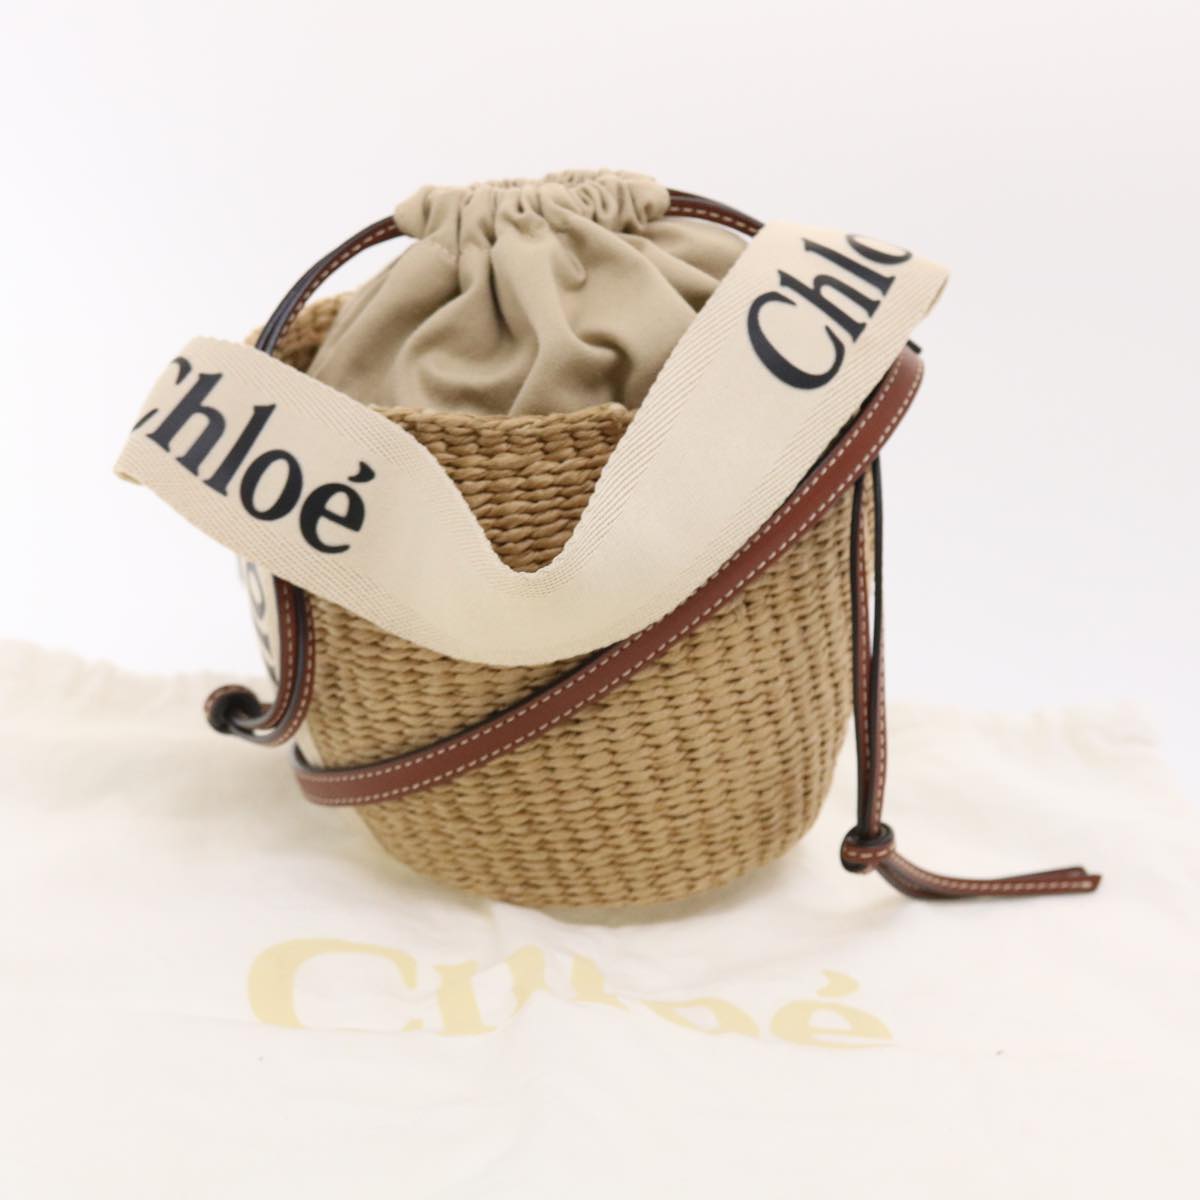 Chloe Small Woody Shoulder Bag Straw Beige 03-21-68-65 Auth 49911